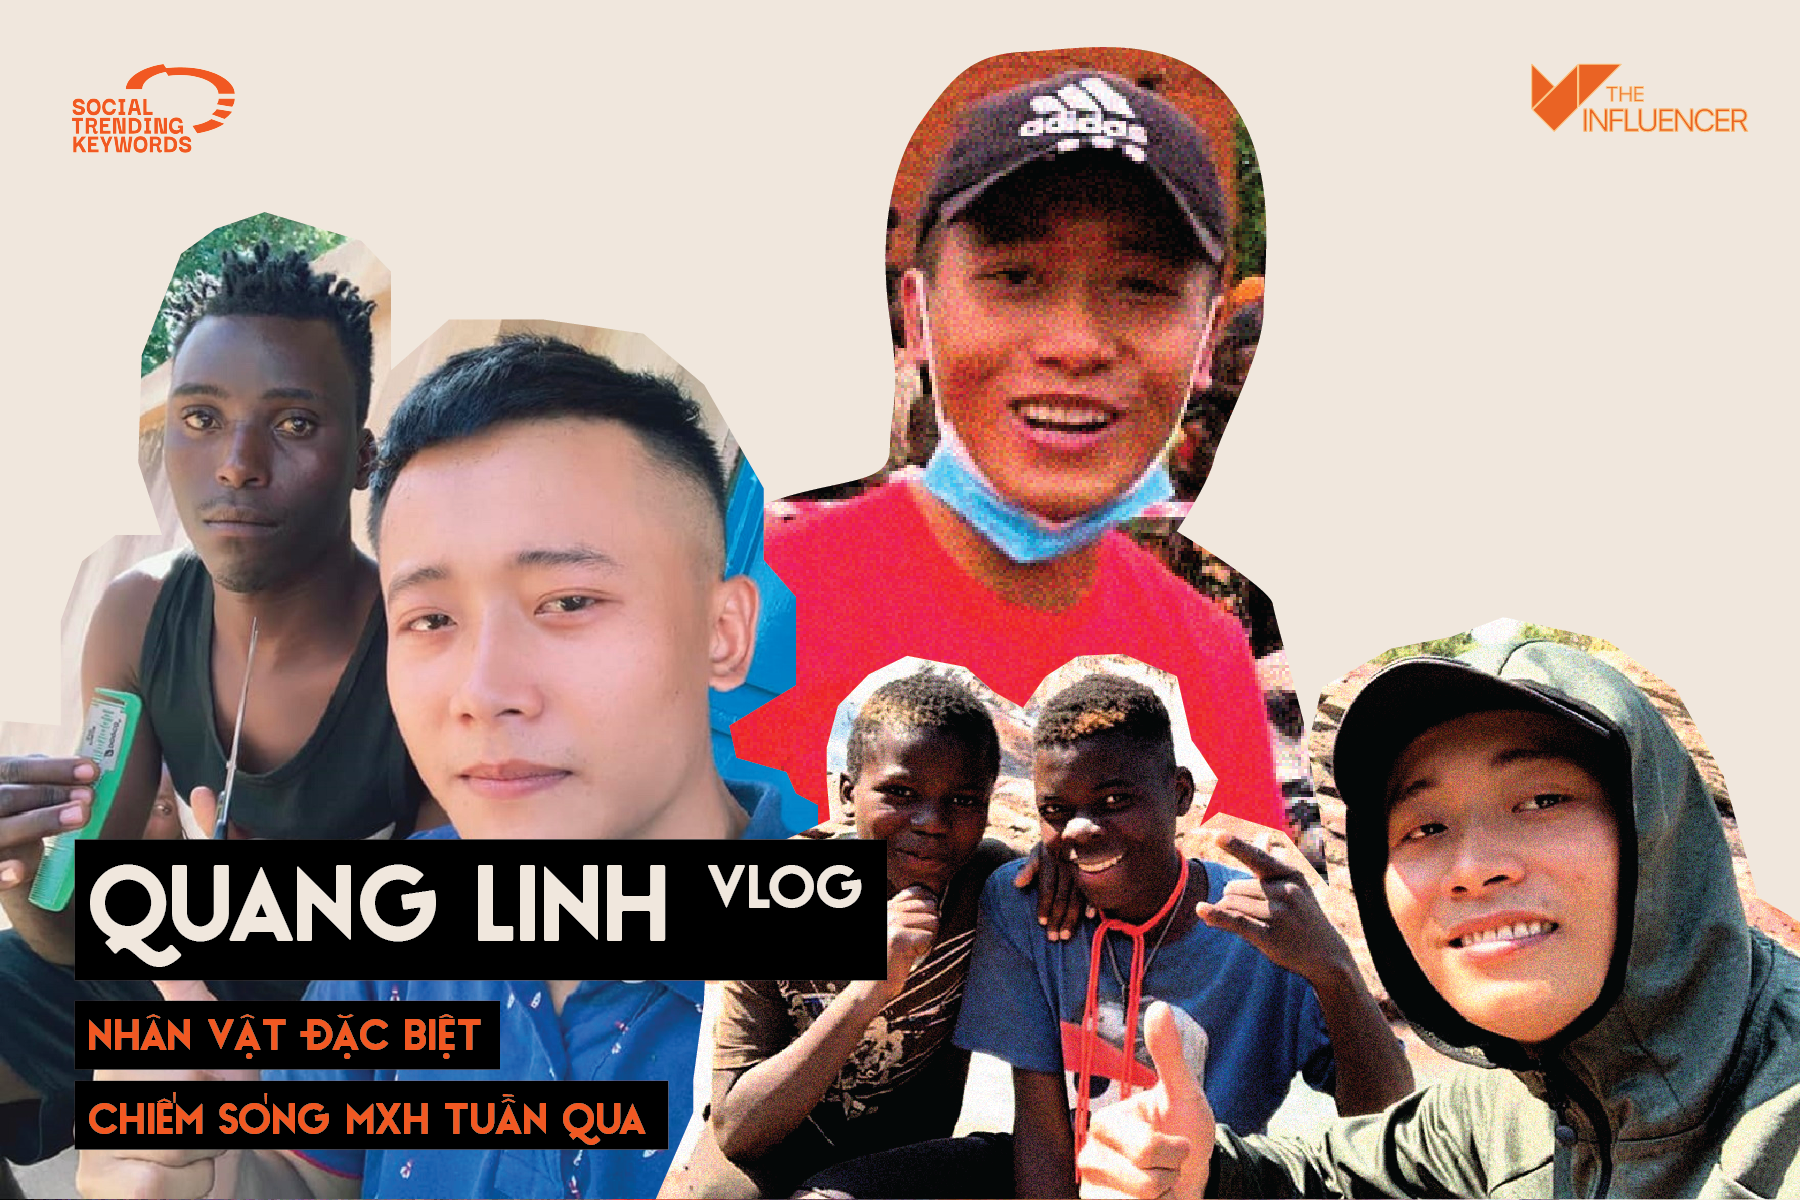 #SocialTrendingKeyword: Quang Linh Vlog - Nhân vật đặc biệt chiếm sóng MXH tuần qua